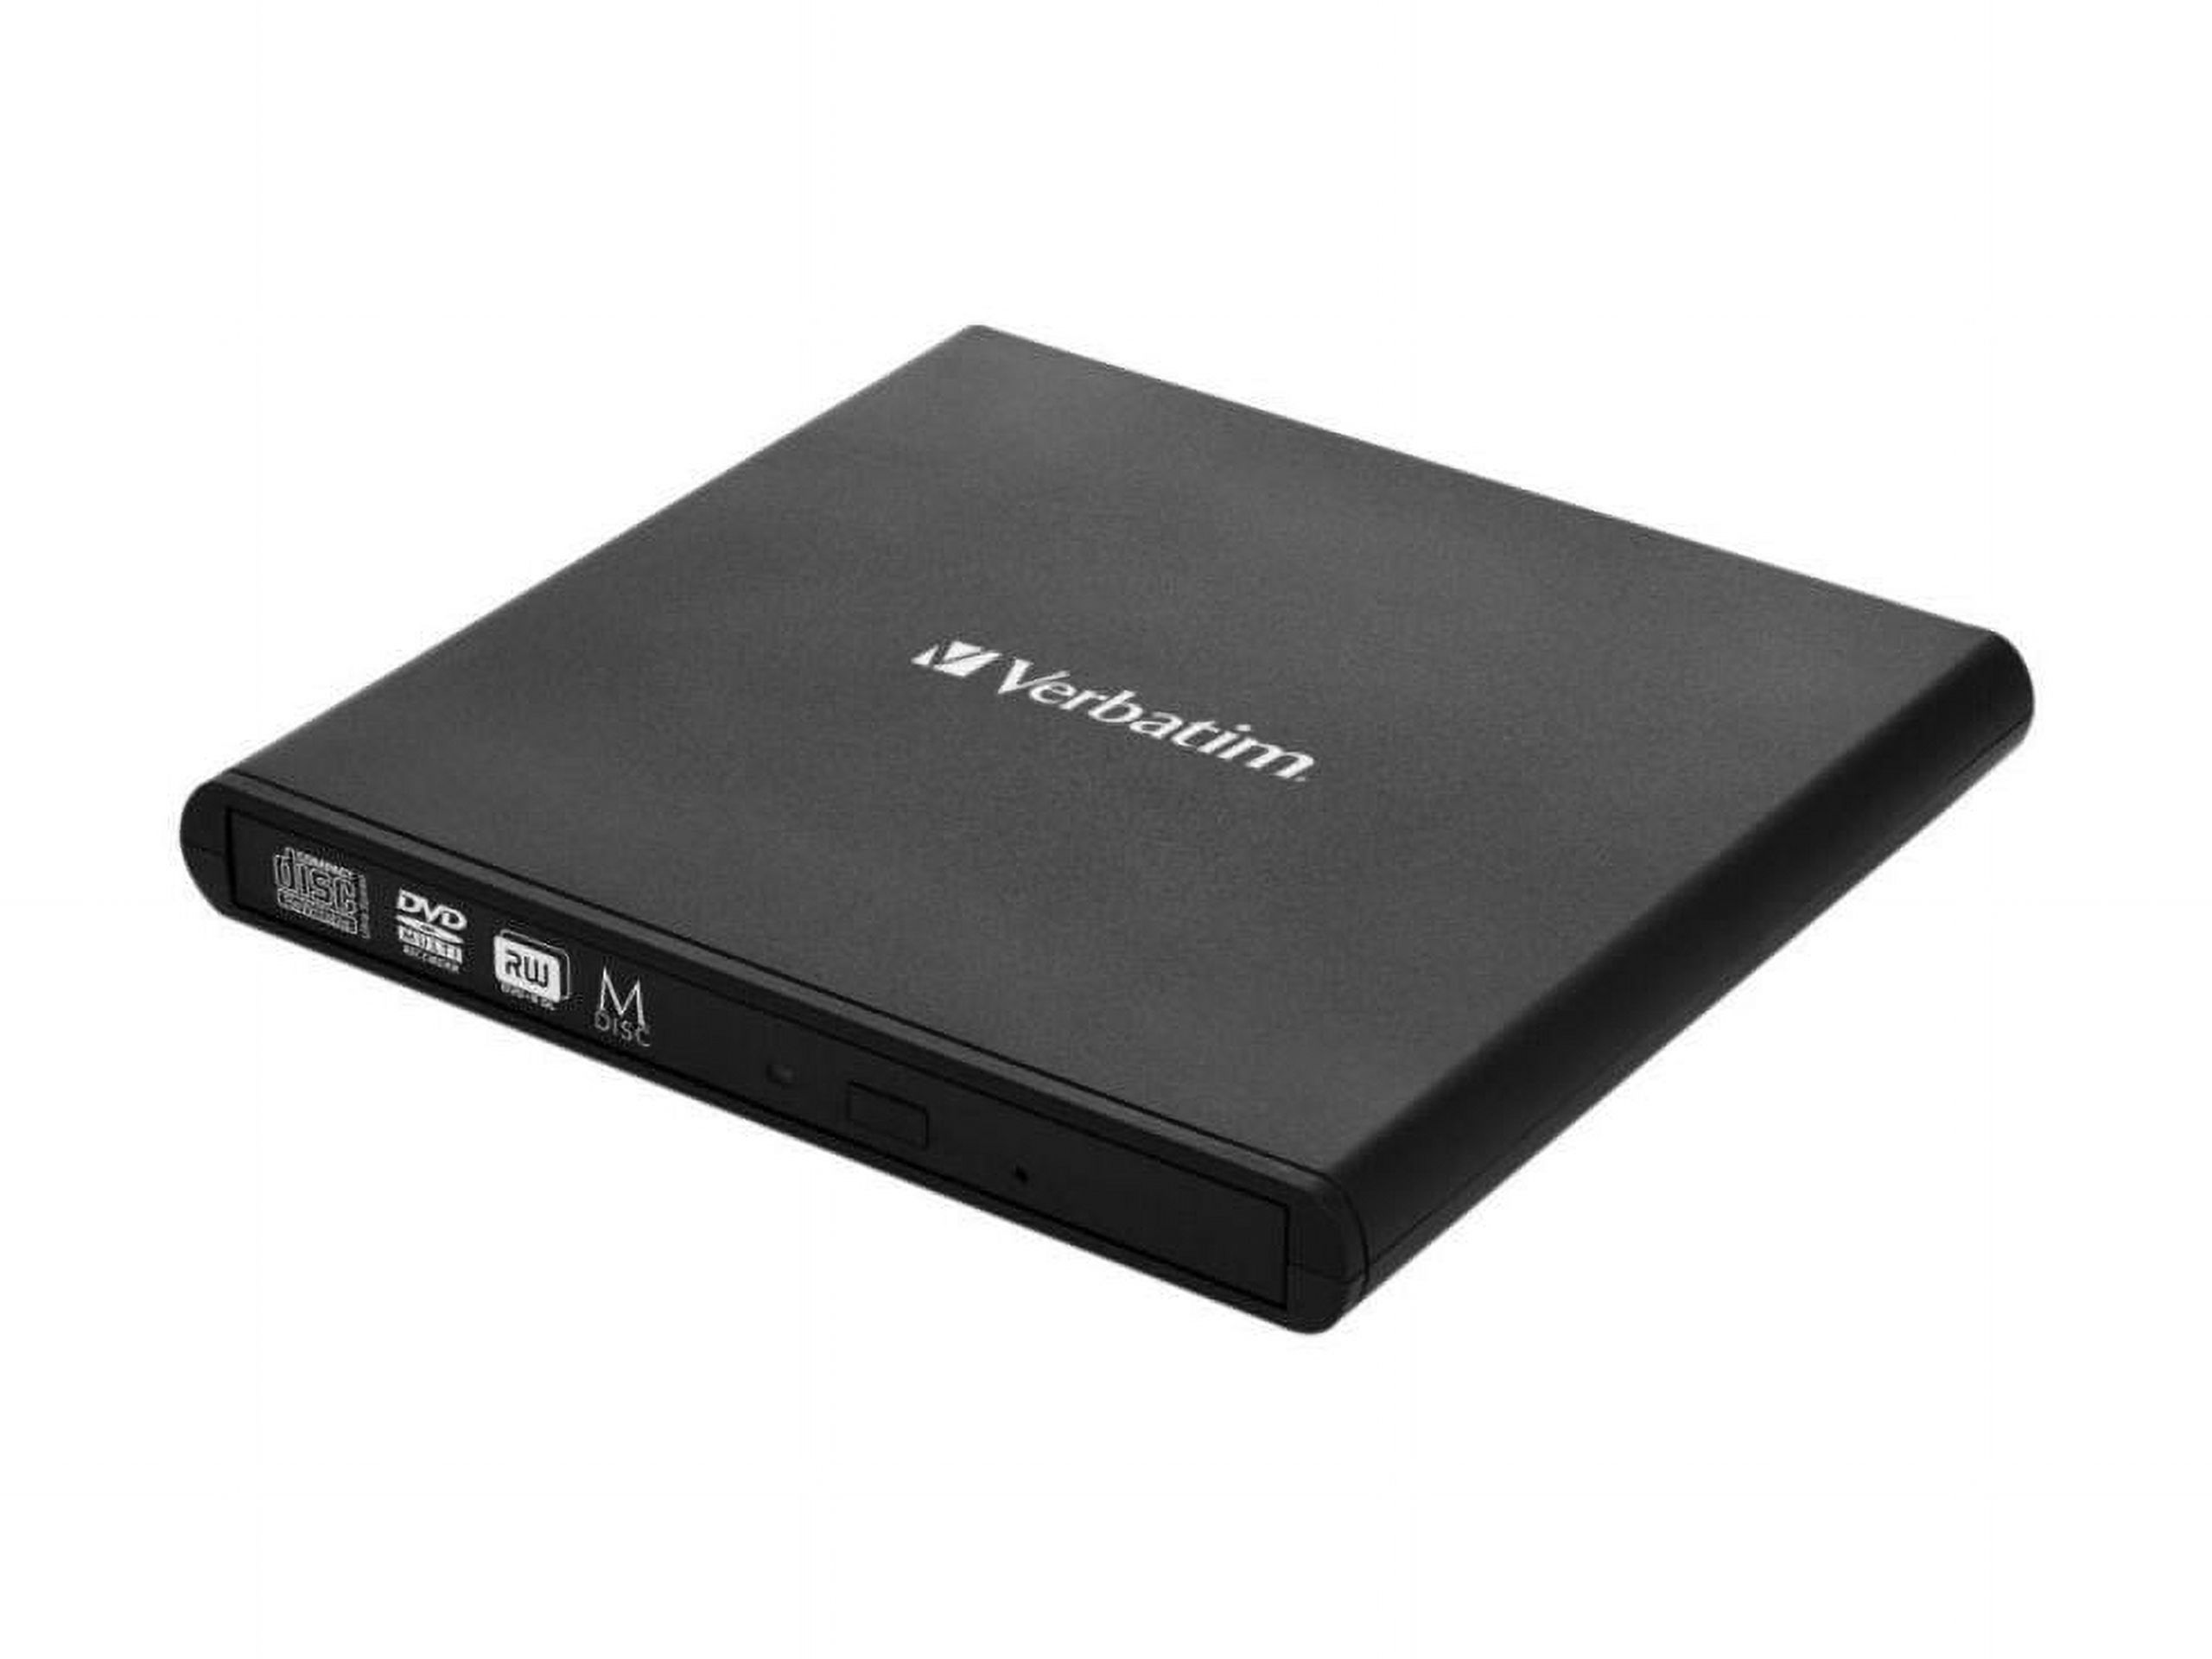 Verbatim USB External Slimline CD/DVD Writer Model 98938 - image 2 of 20